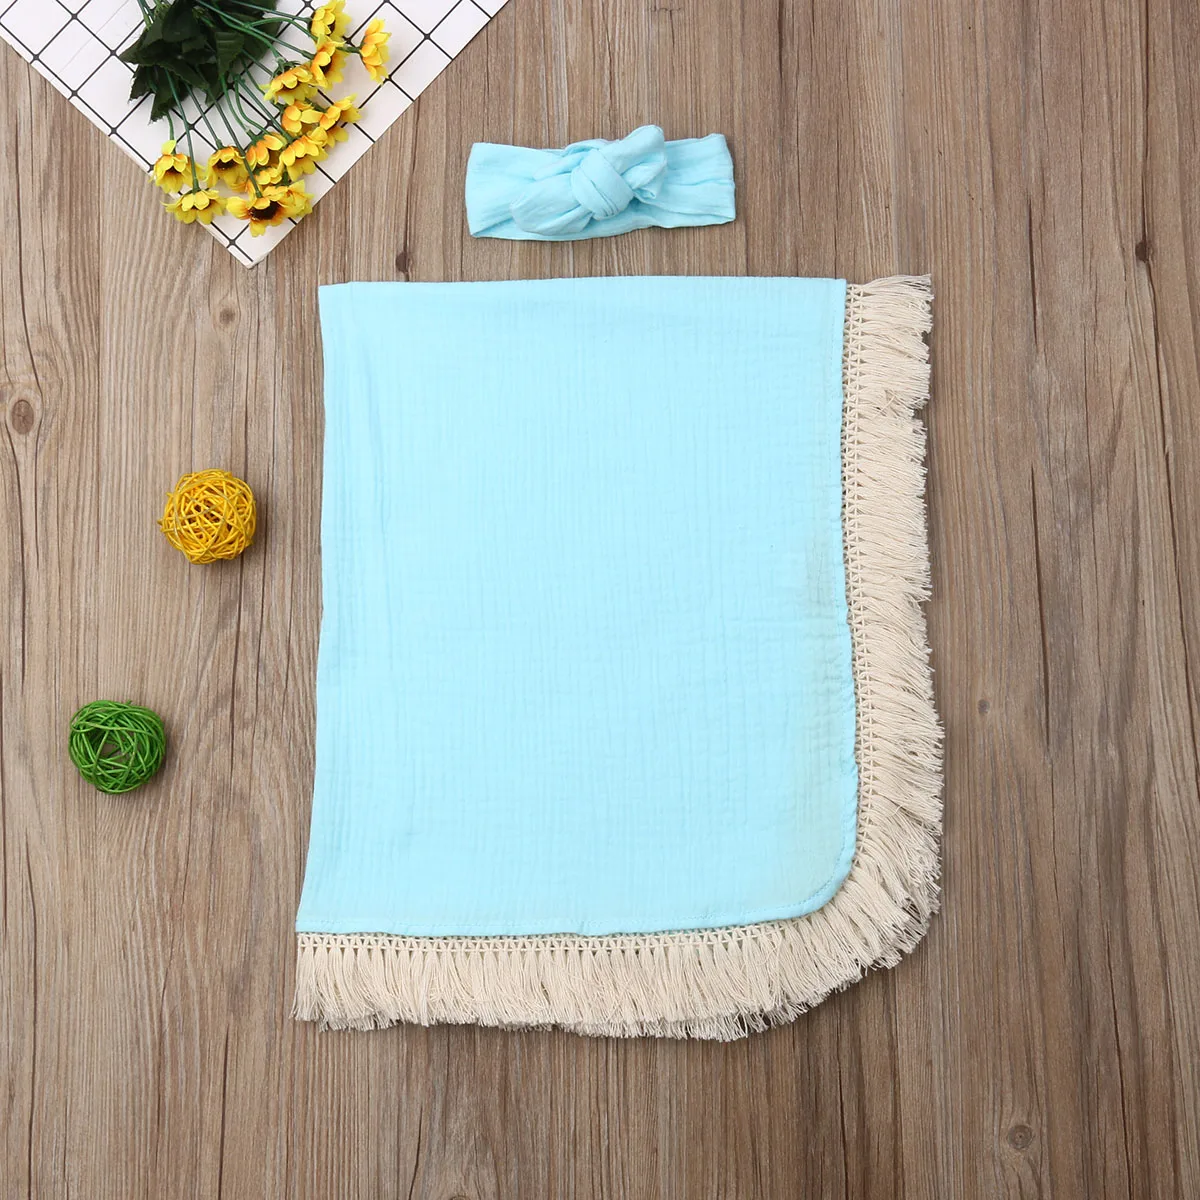 Для новорожденного мягкий кисточки пеленать для завёртывания для пеленания спальный мешок повязка на голову набор - Цвет: Light Blue